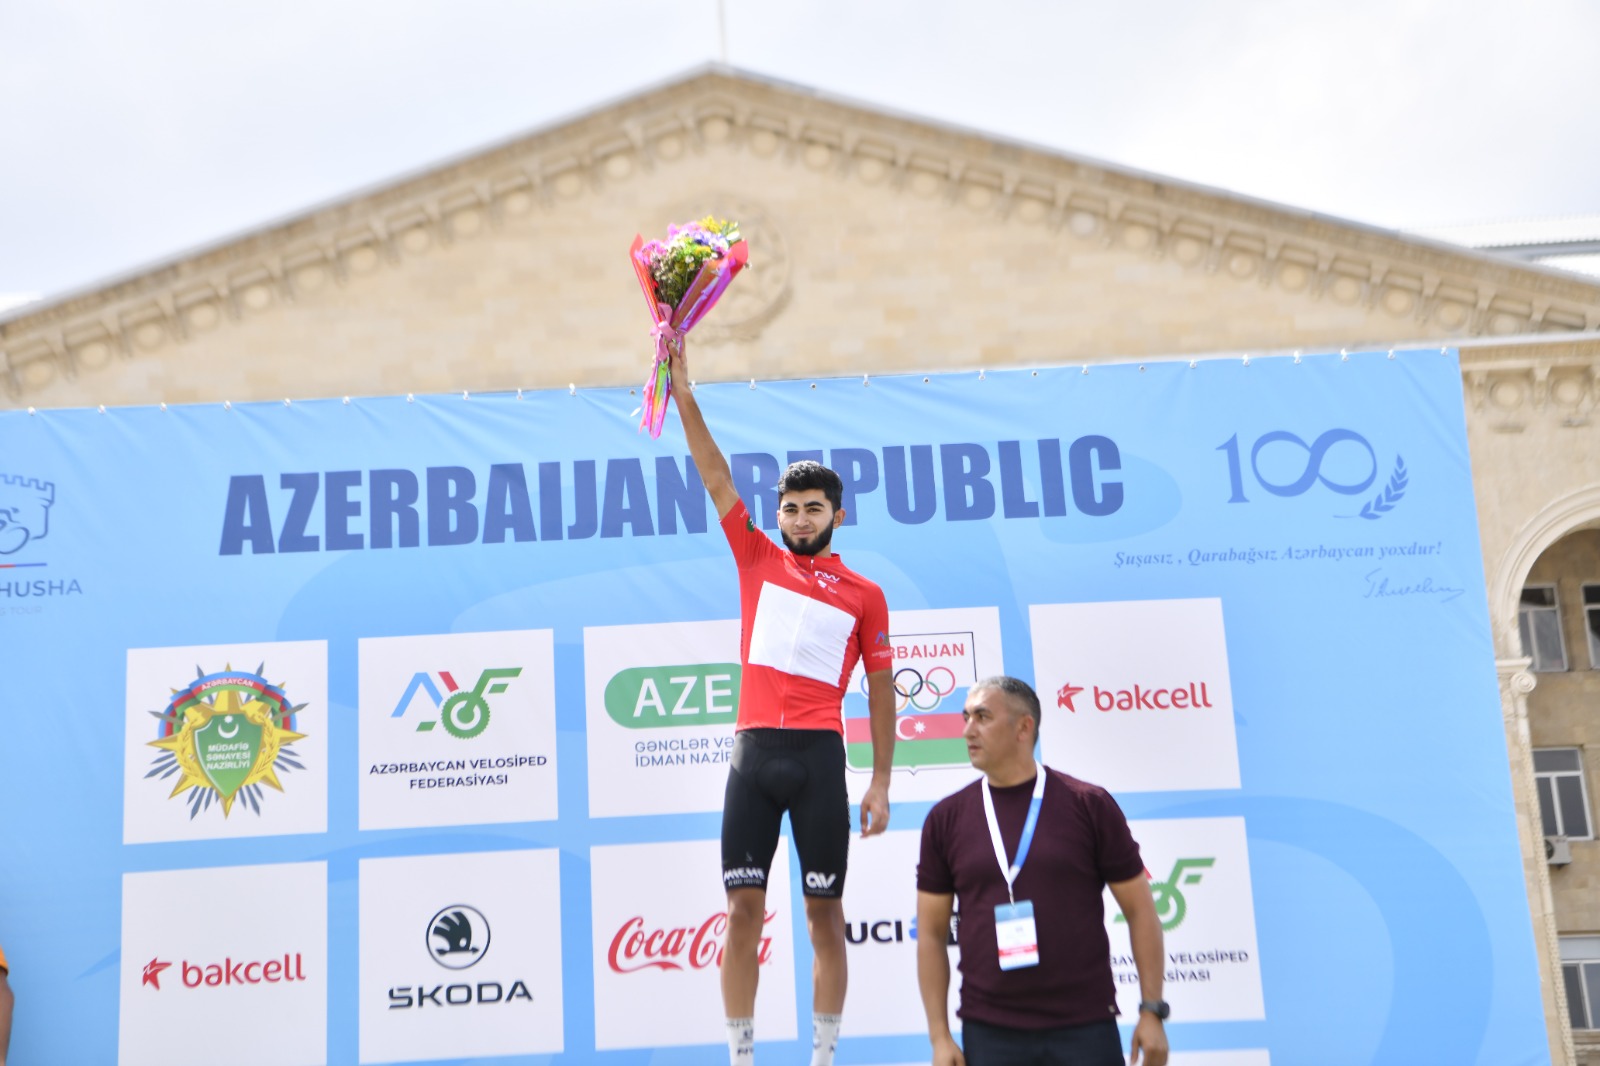 "Əziz Şuşa" beynəlxalq velosiped yarışının üçüncü mərhələsi keçirilib